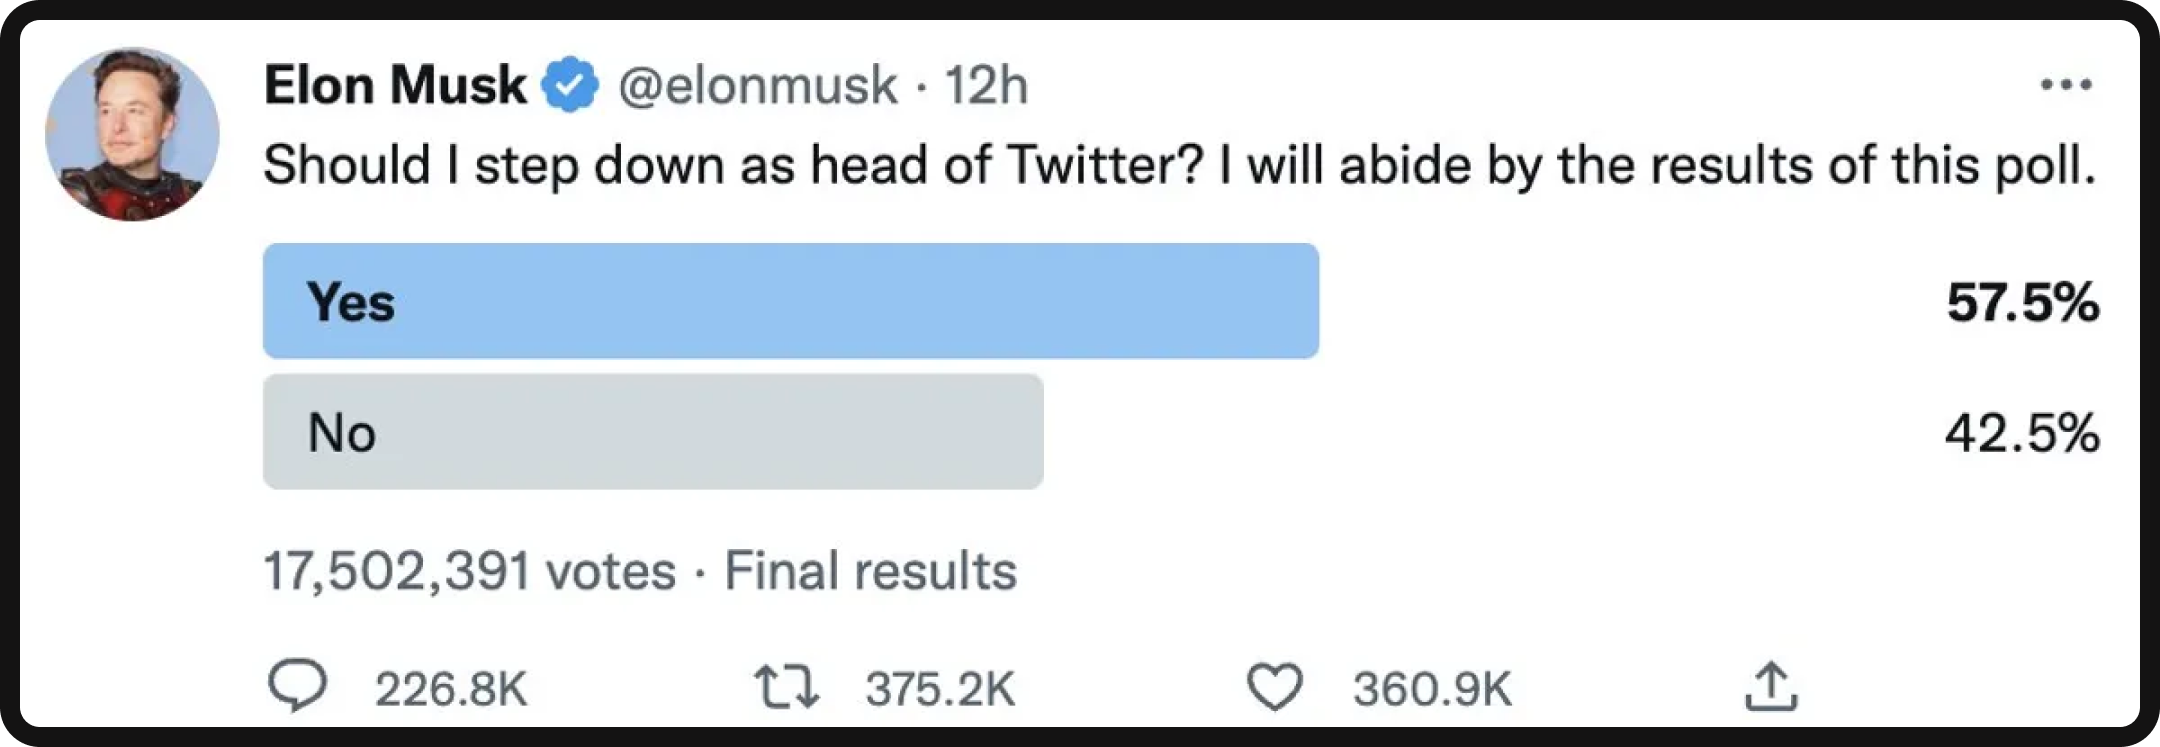 Elon Musk's resignation as Twitter's CEO tweet/ poll. 